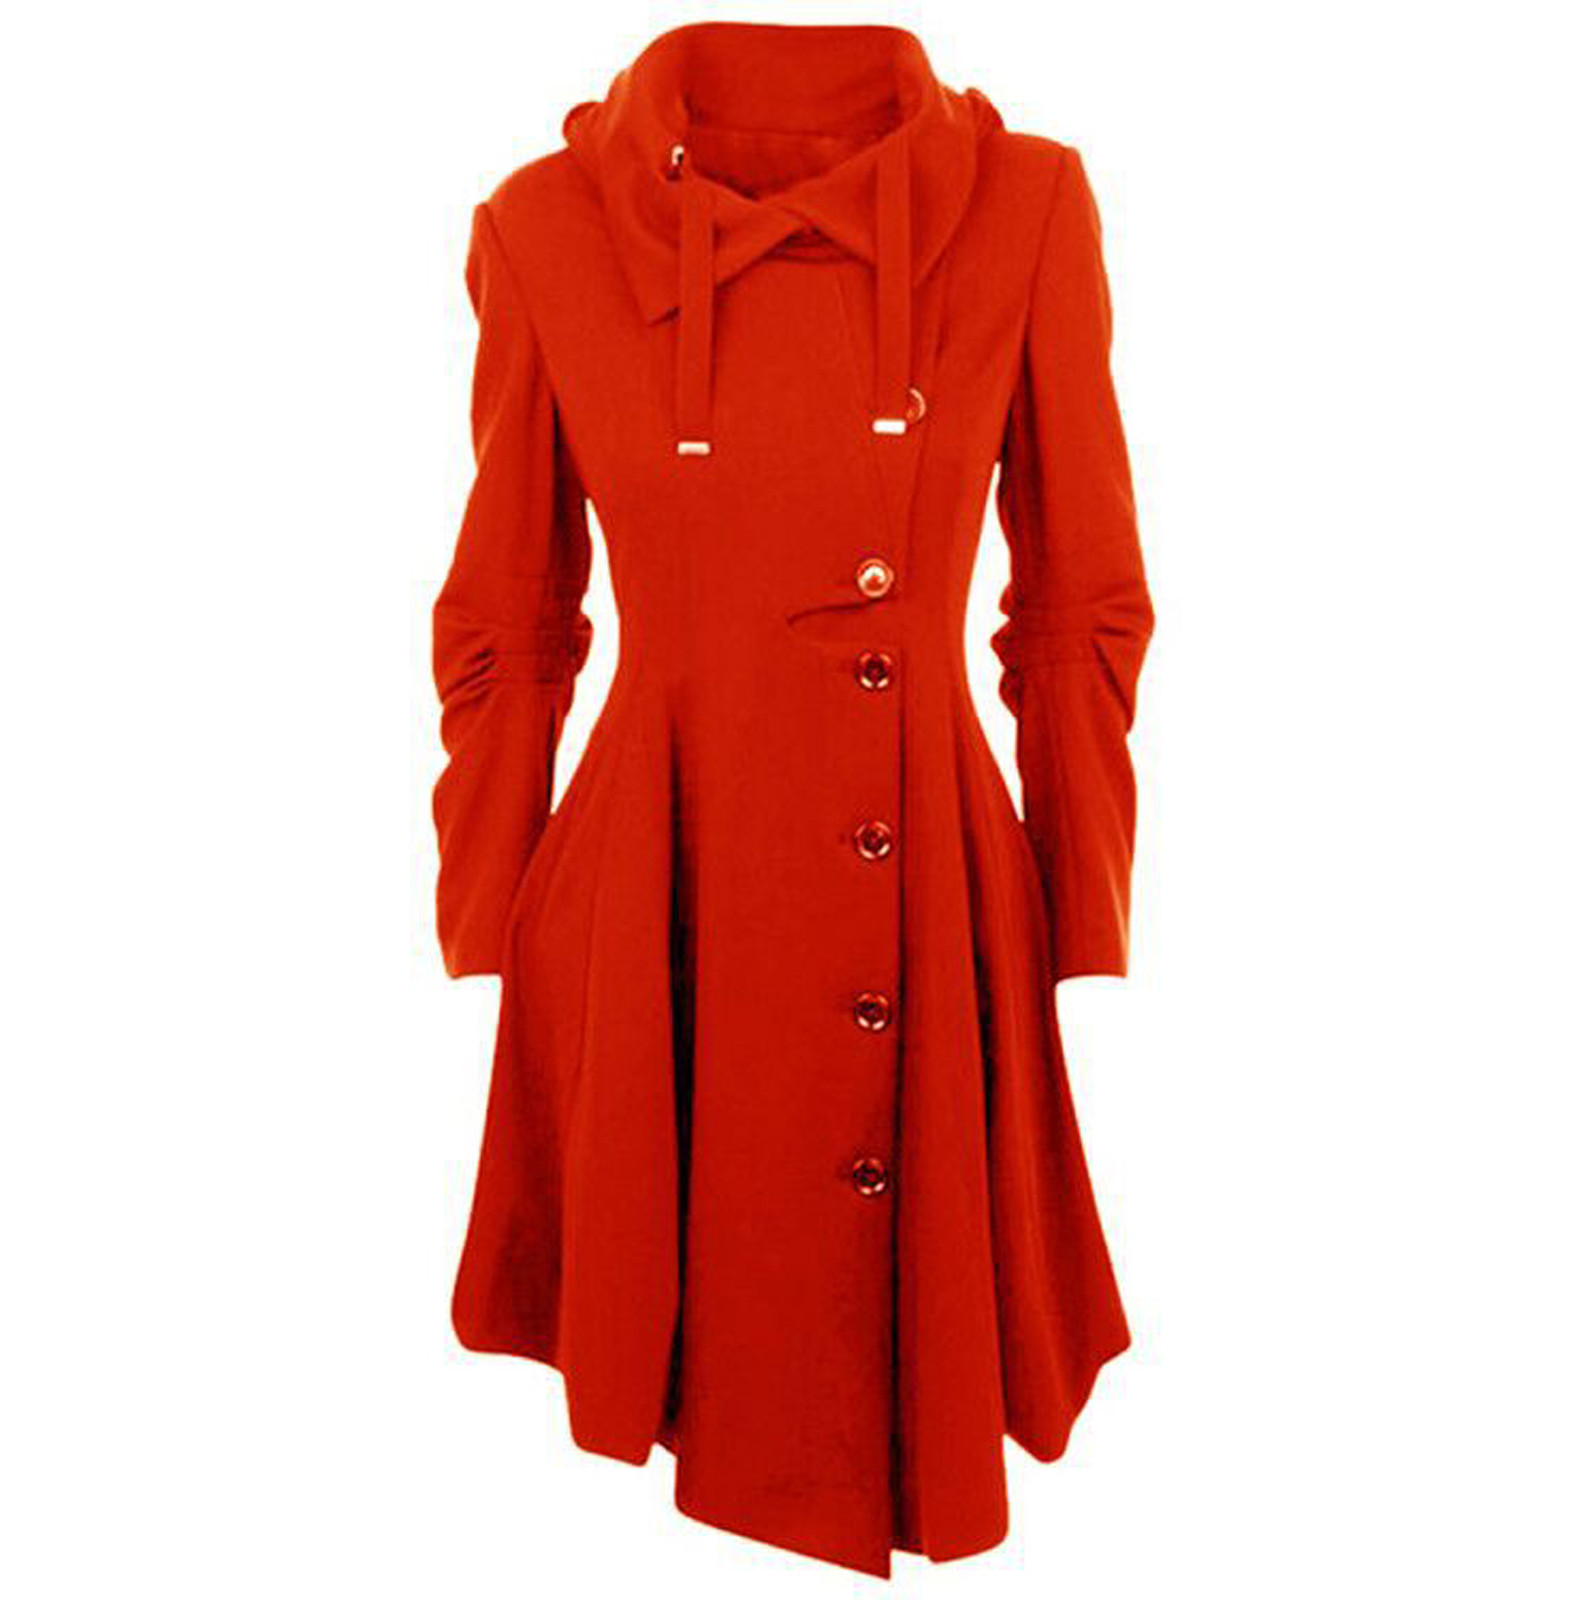 EQWLJWE Women Faux Wool Warm Slim Coat Jacket Thick-Parka Overcoat Long Winter Outwear - image 1 of 4